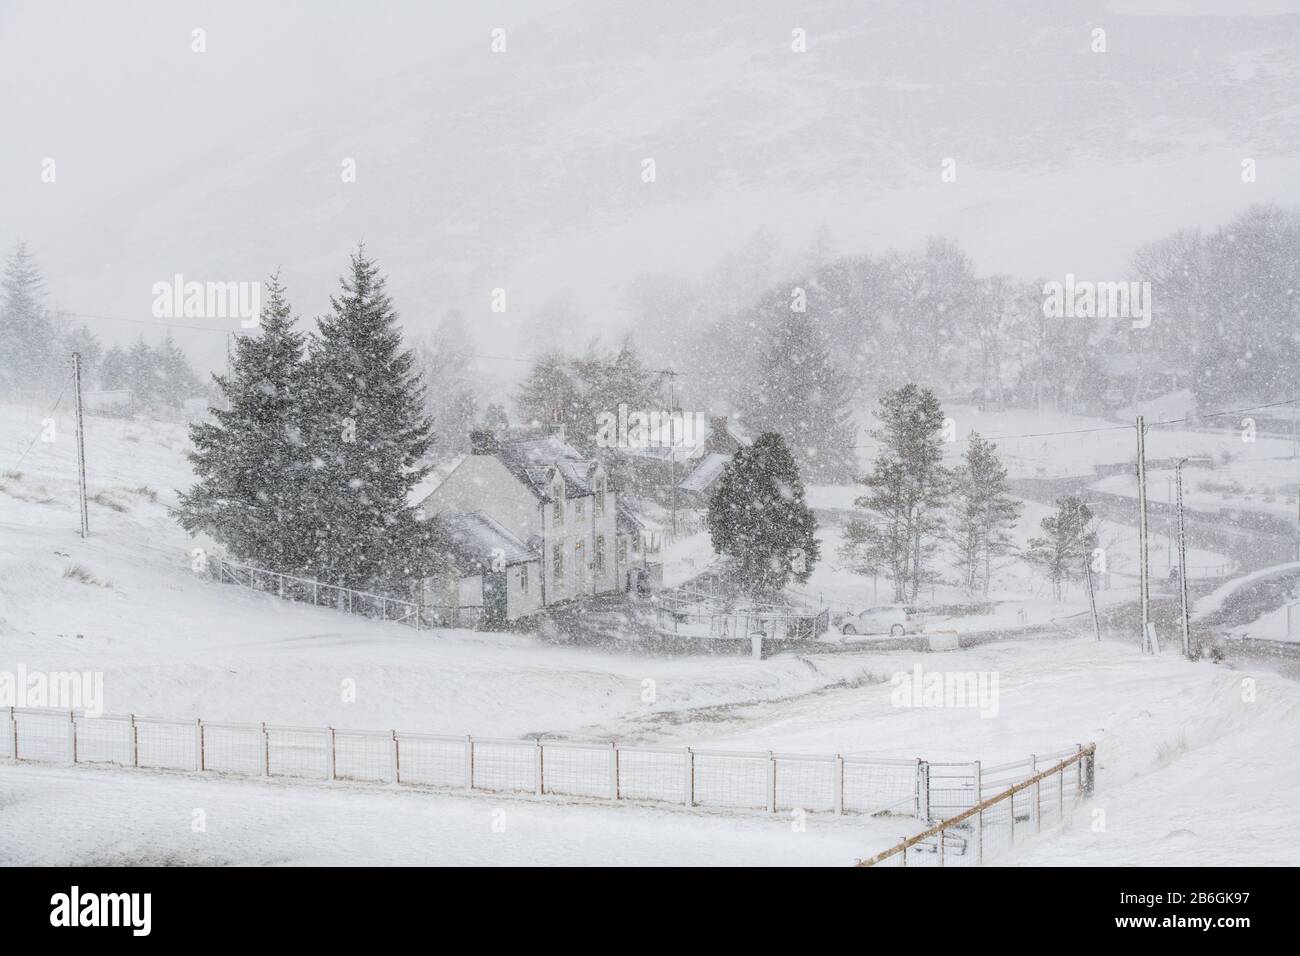 Village de Wanlockhead dans la neige pendant la tempête Jorge. Février 2020. Le village le plus élevé de Scotlands. Dumfries et Galloway, frontières écossaises, Écosse Banque D'Images